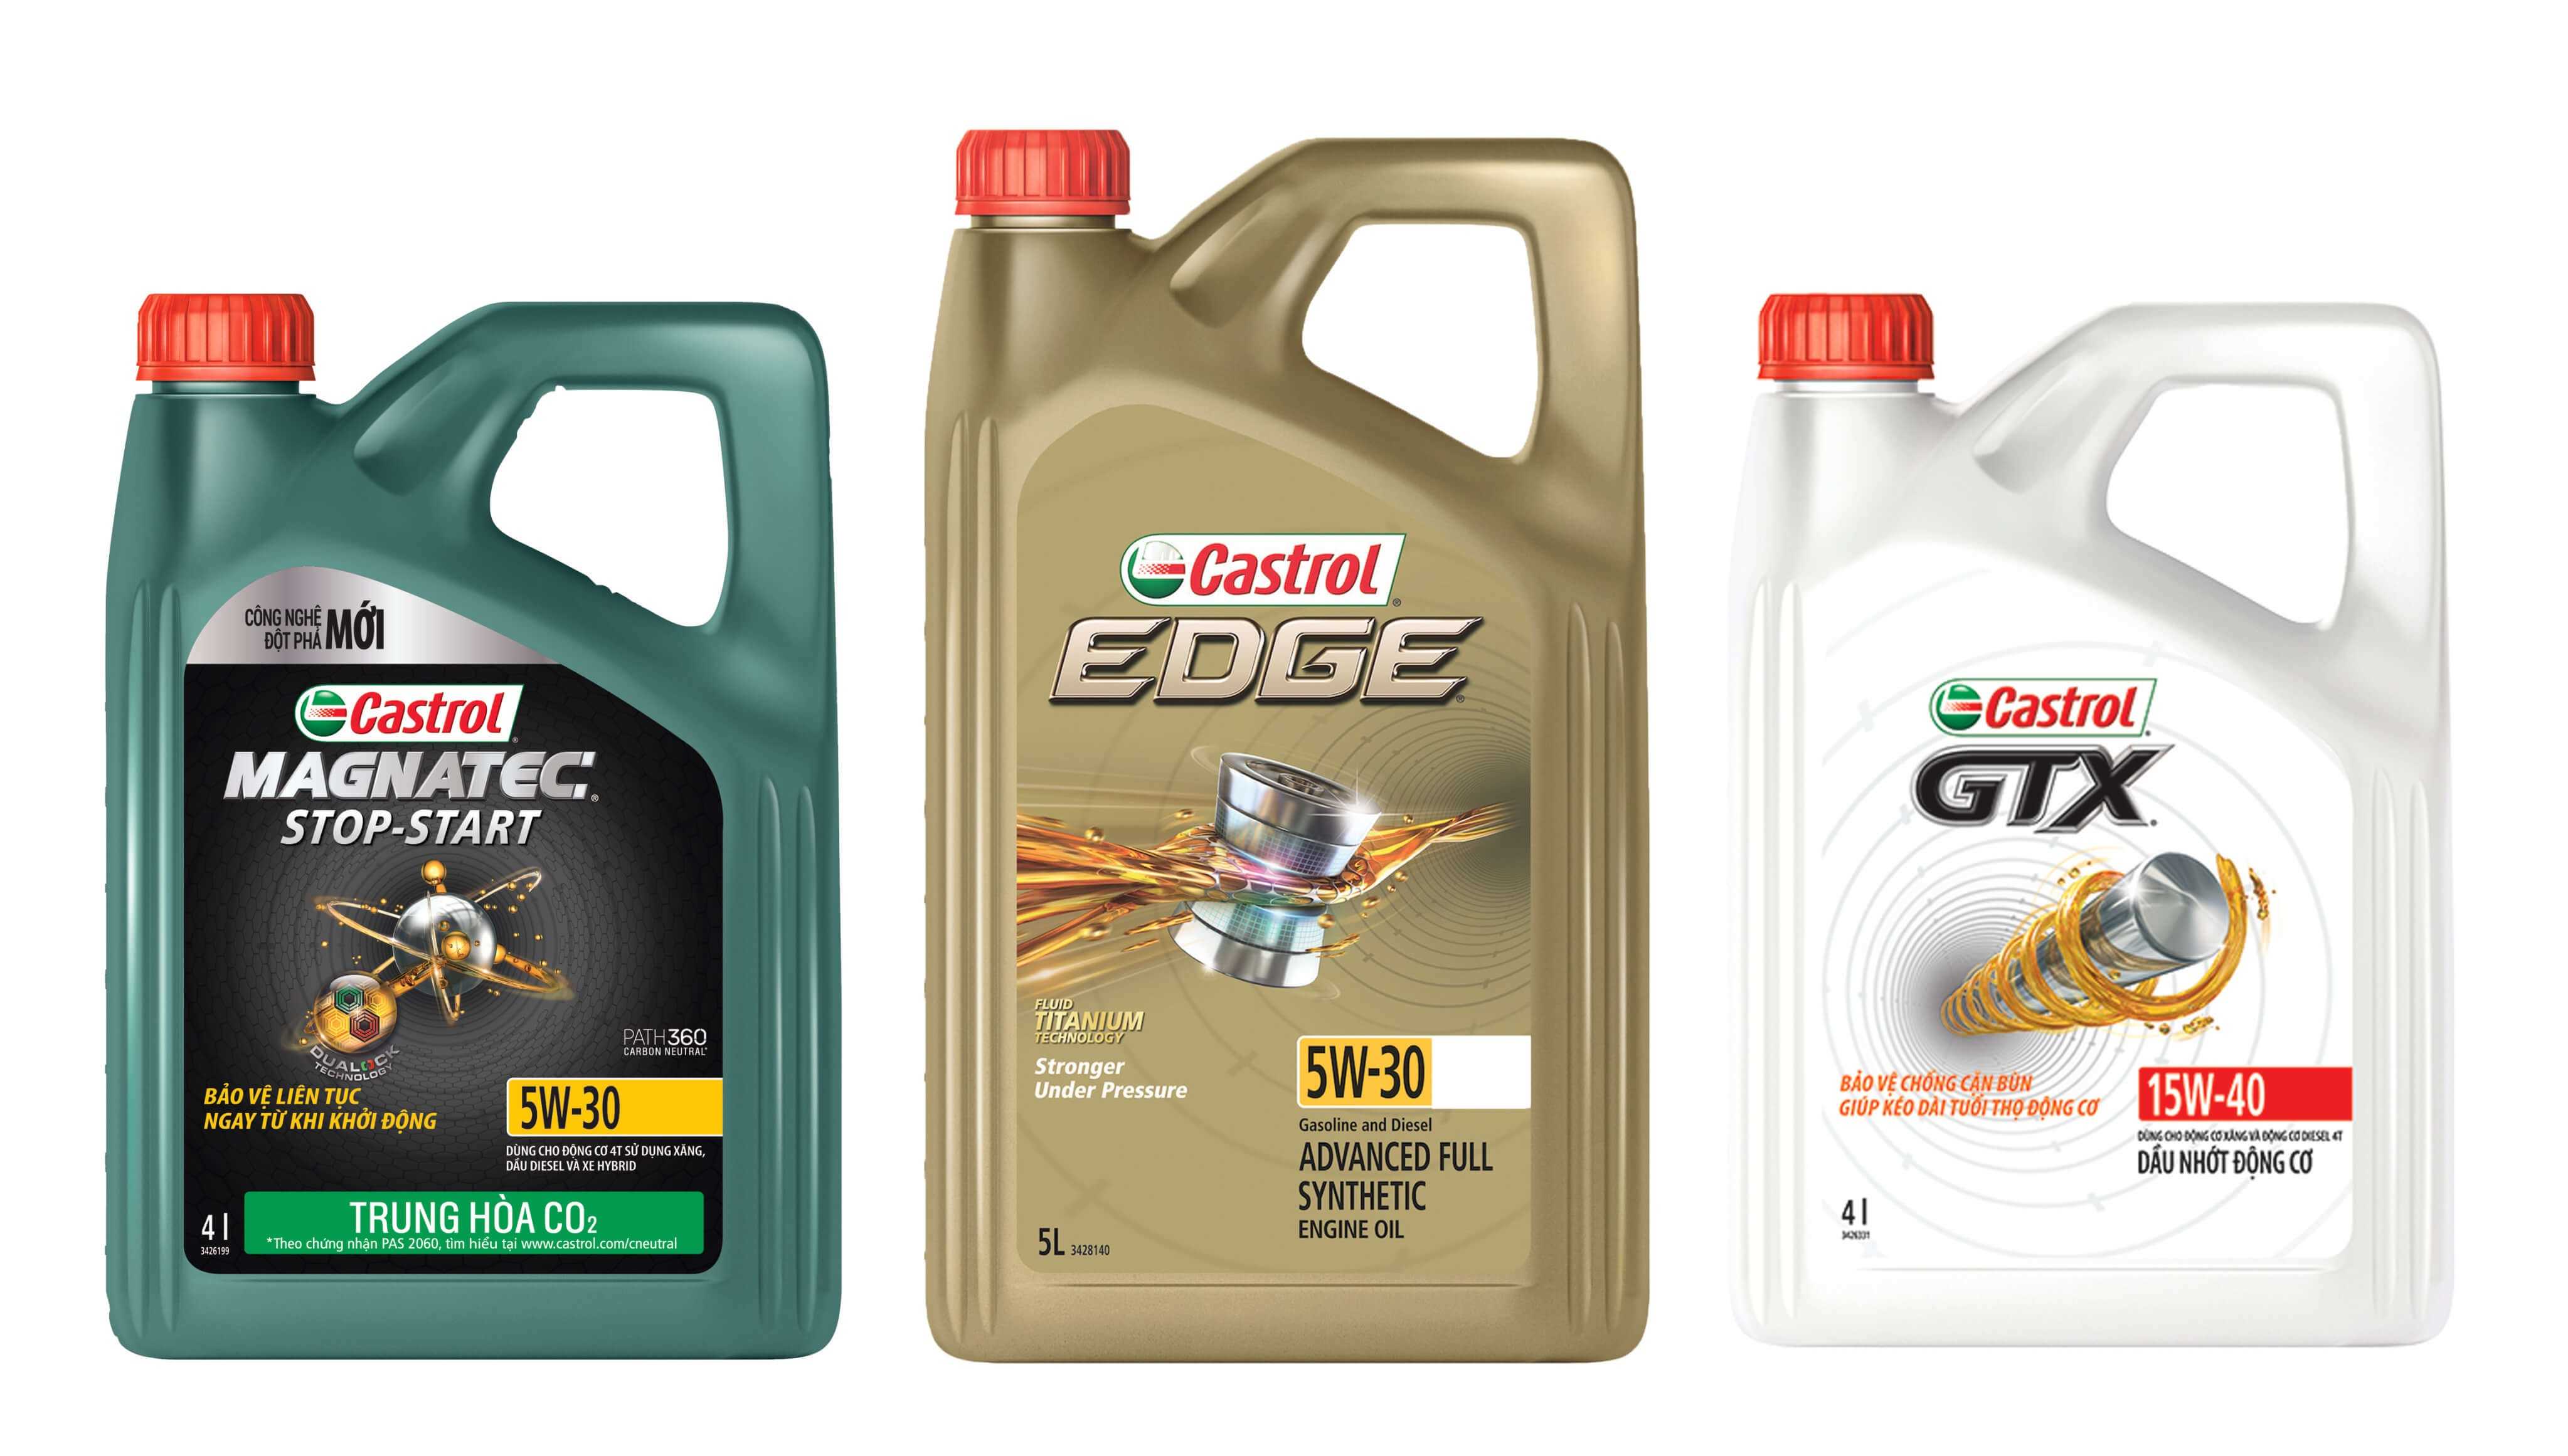 Castrol cung cấp cho người dùng 3 dòng sản phẩm dầu động cơ ô tô ưu việt gồm Castrol MAGNATEC, Castrol EDGE và Castrol GTX